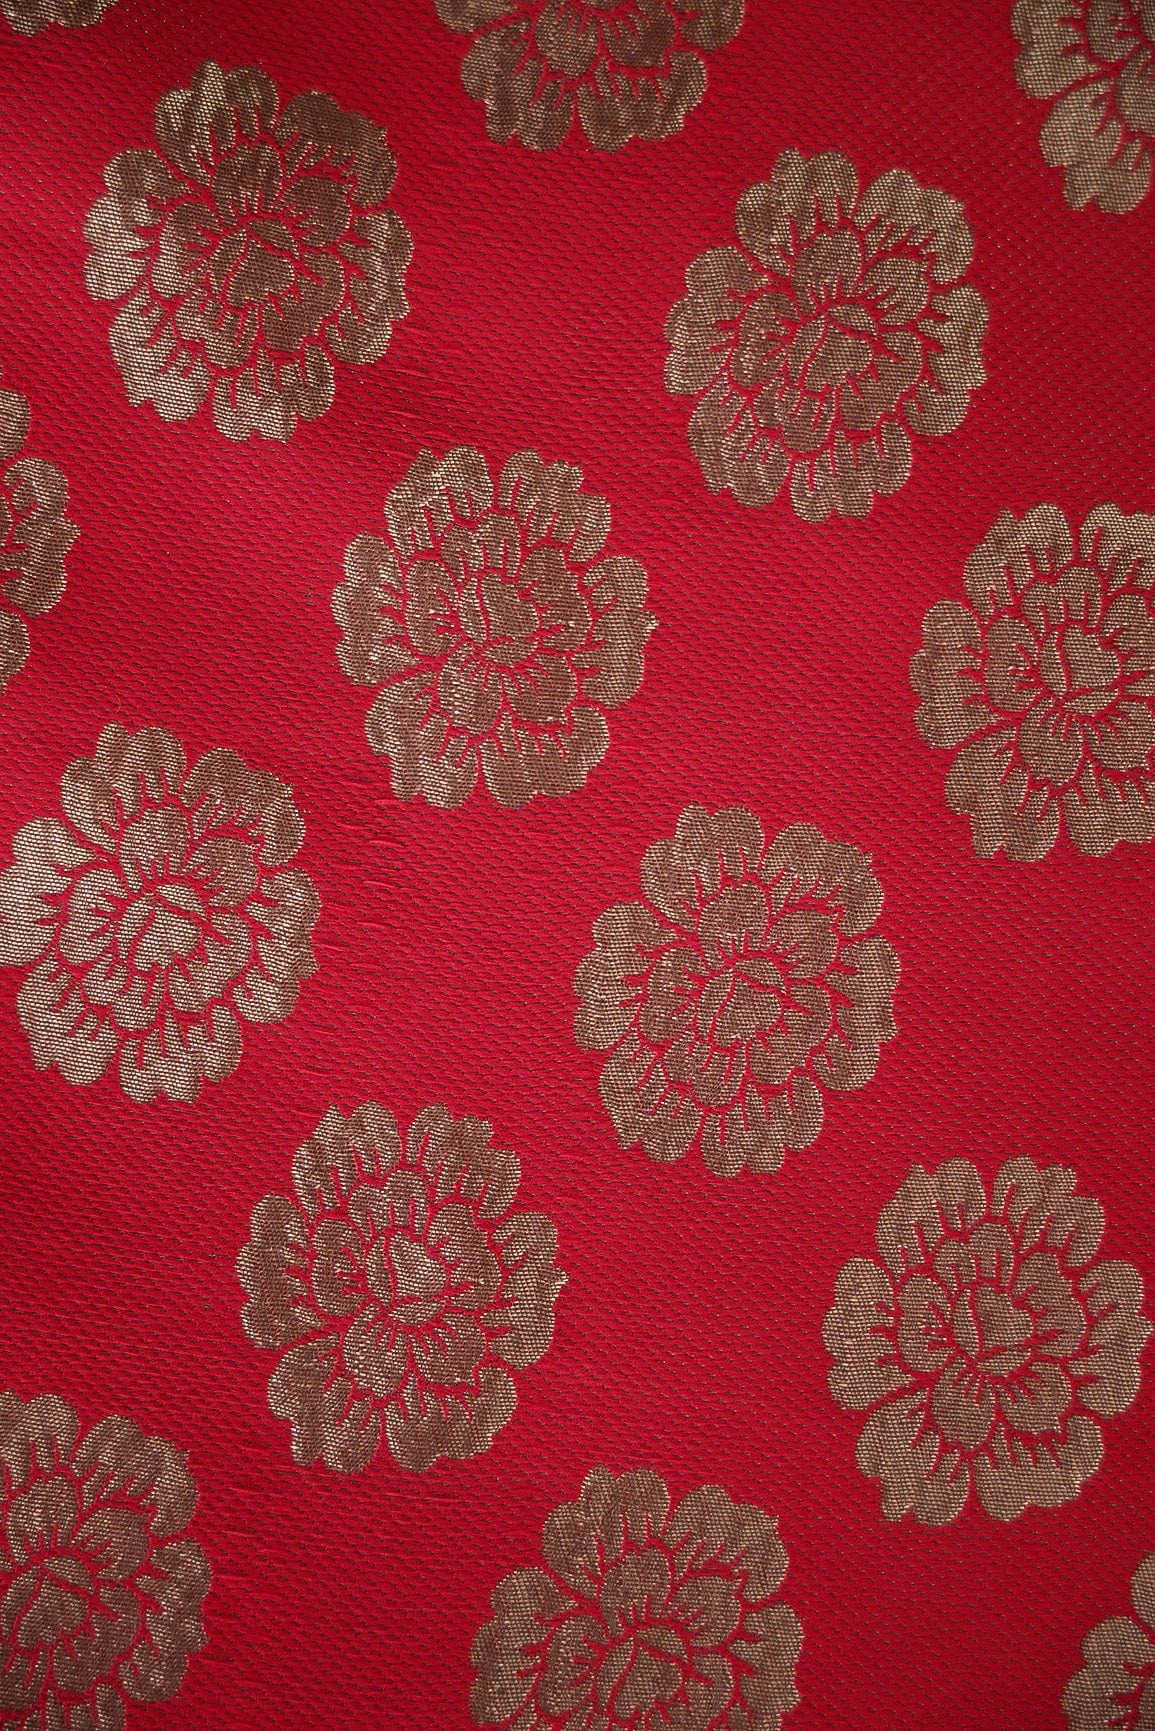 Red and Gold Floral Motif Banarasi Brocade Fabric - doeraa